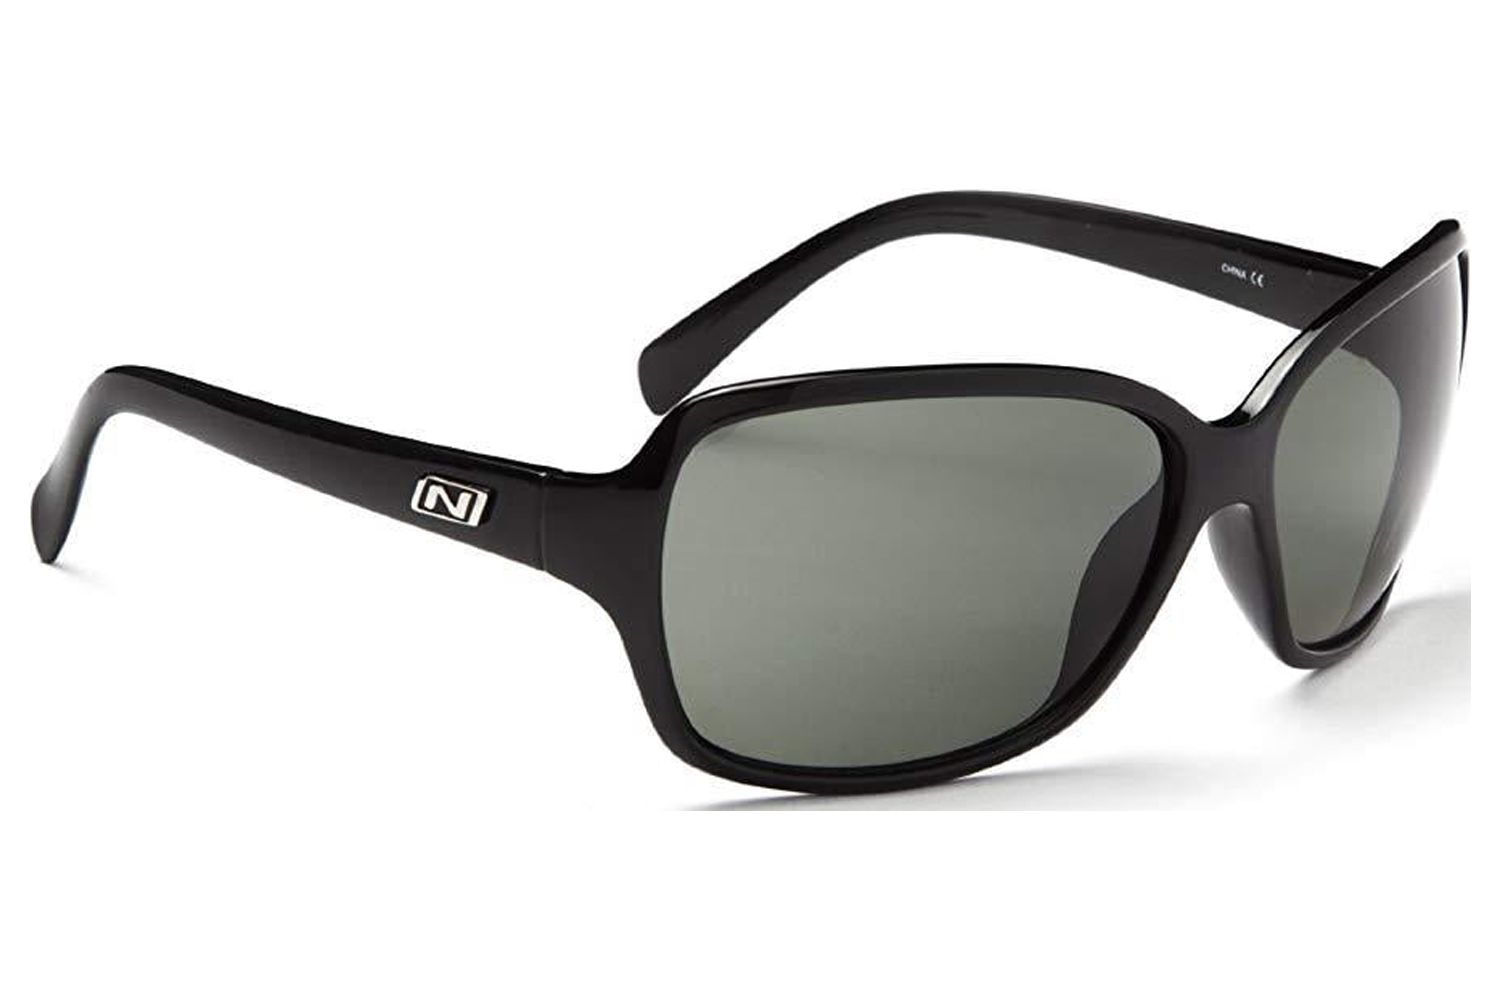 Optic Nerve Polarized Women's Sunglasses with 100% UVA/UVB Protection for Fashion and Style, Elixer - Shiny Black with Polarized Smoke Lens - - image 1 of 1